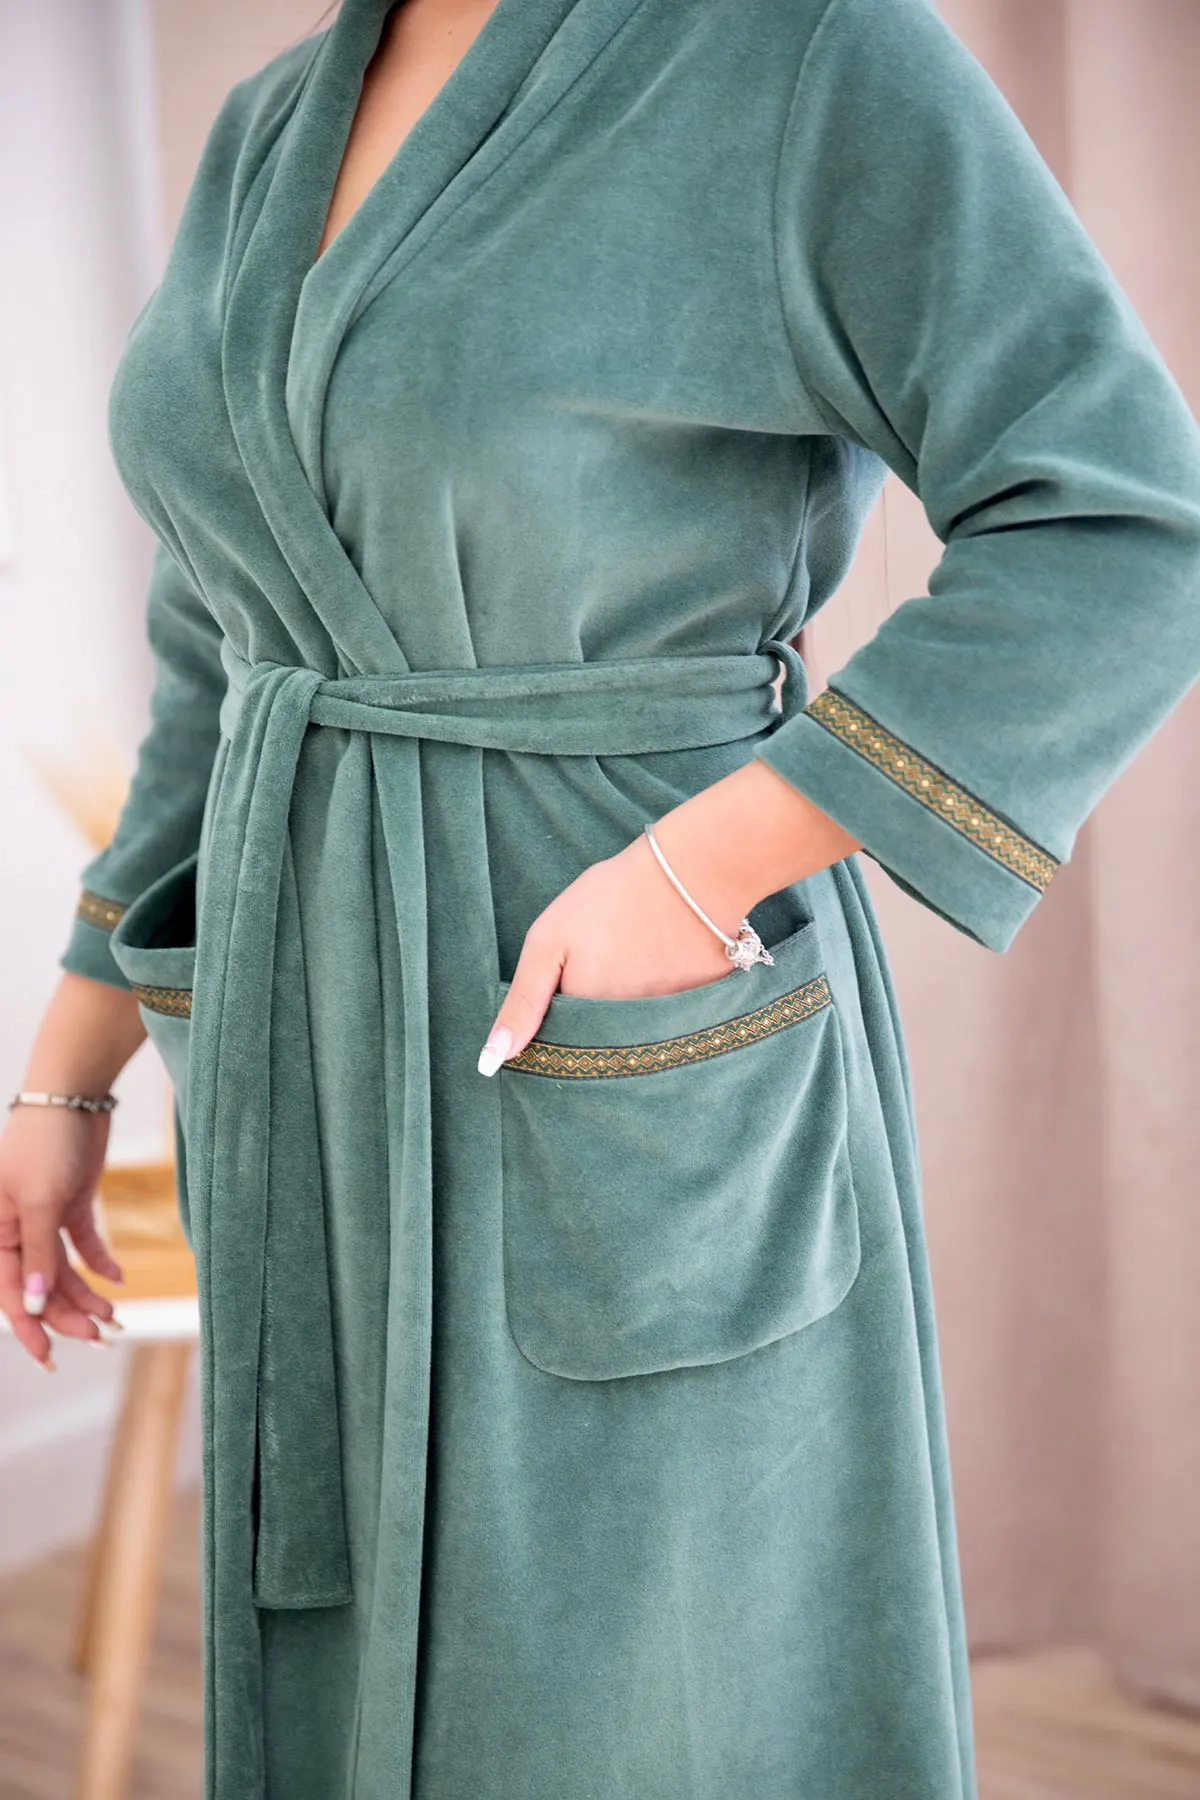 Женский велюровый запашной халат приятный к телу с карманами широким поясом  без капюшона | AliExpress